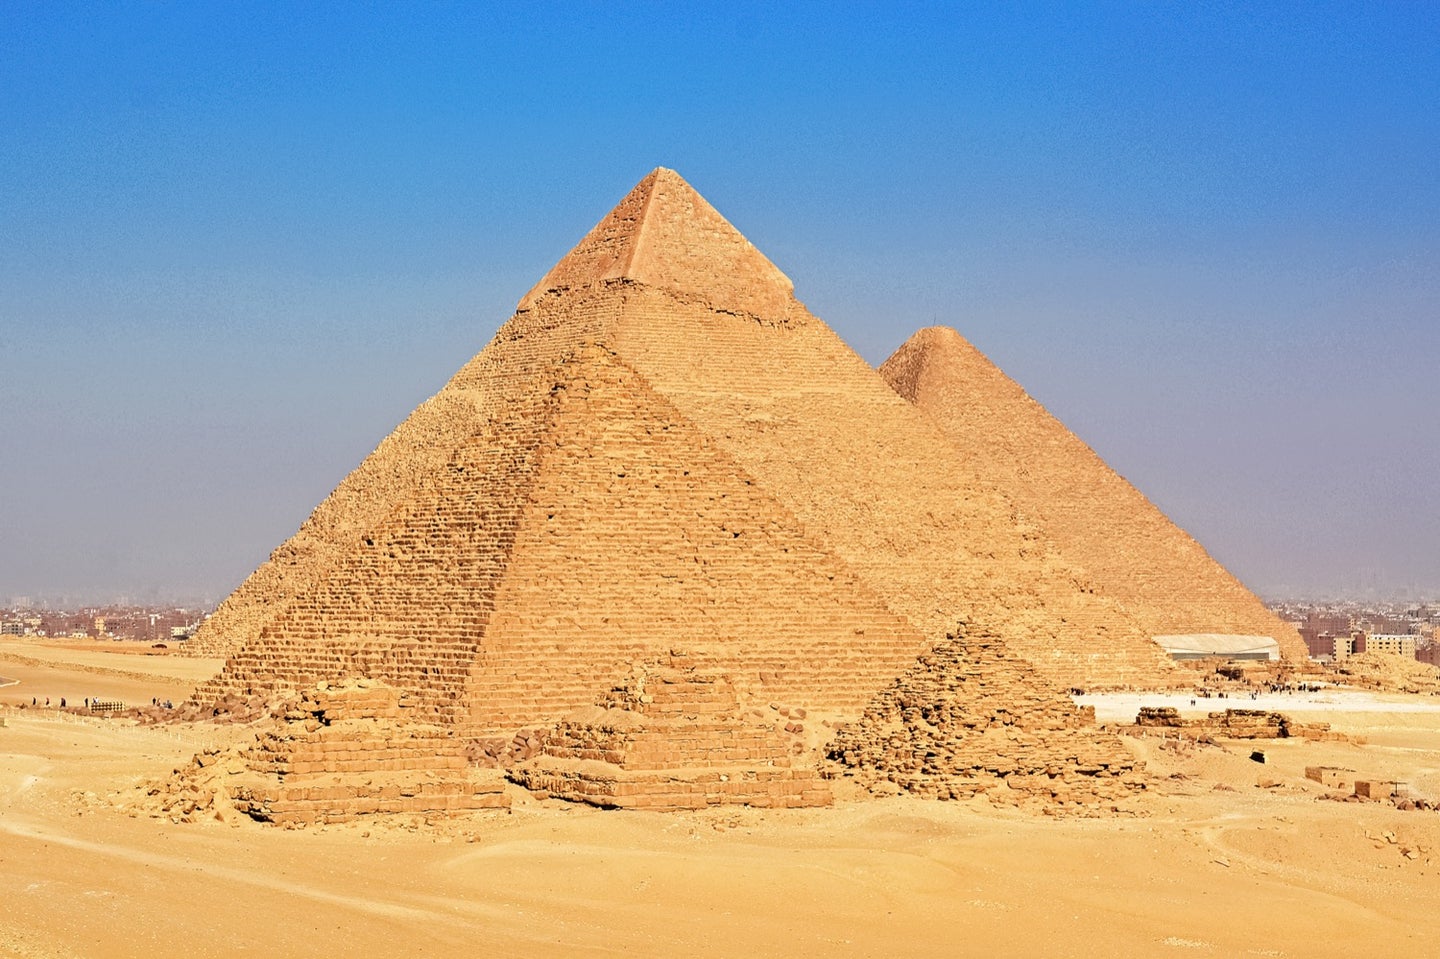 https://www.popsci.com/uploads/2022/08/30/pyramids-giza.jpg?auto=webp&width=1440&height=959.04